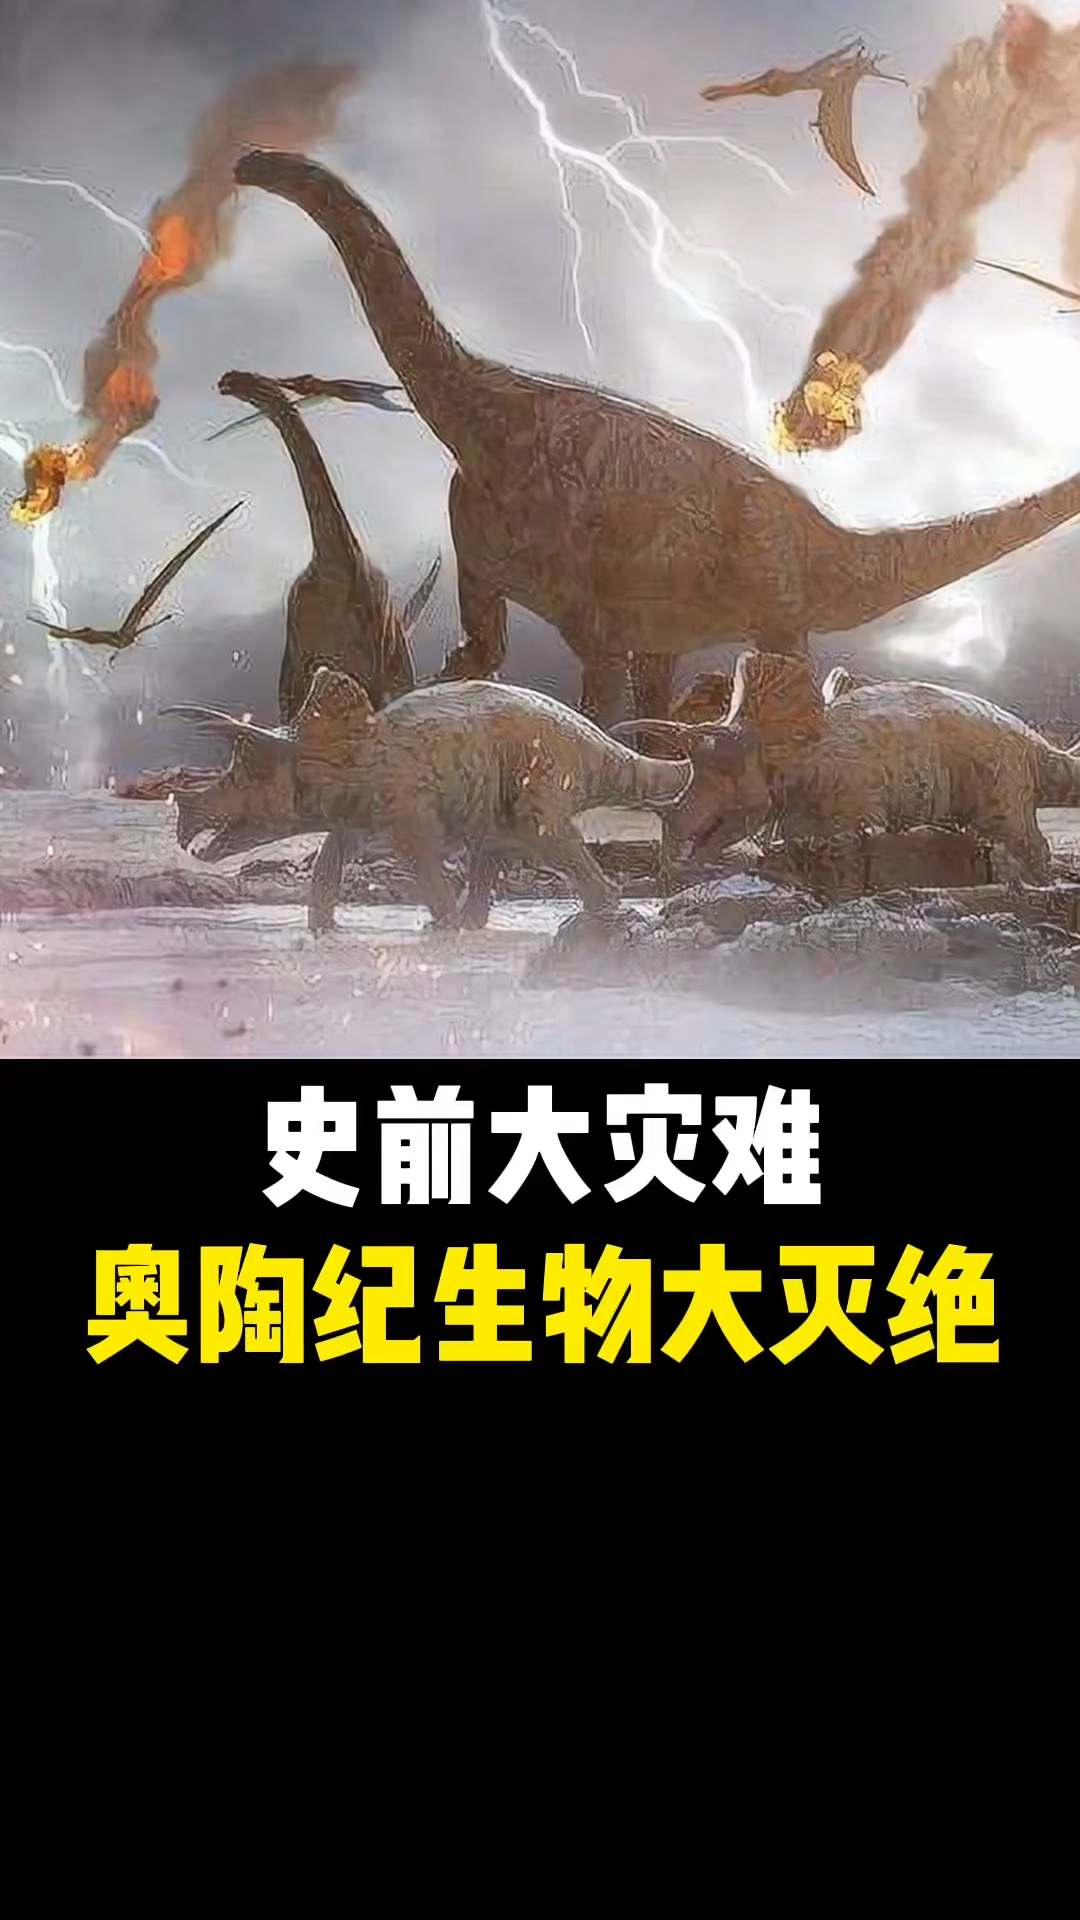 恐龙史前大灾难之奥陶纪生物大灭绝